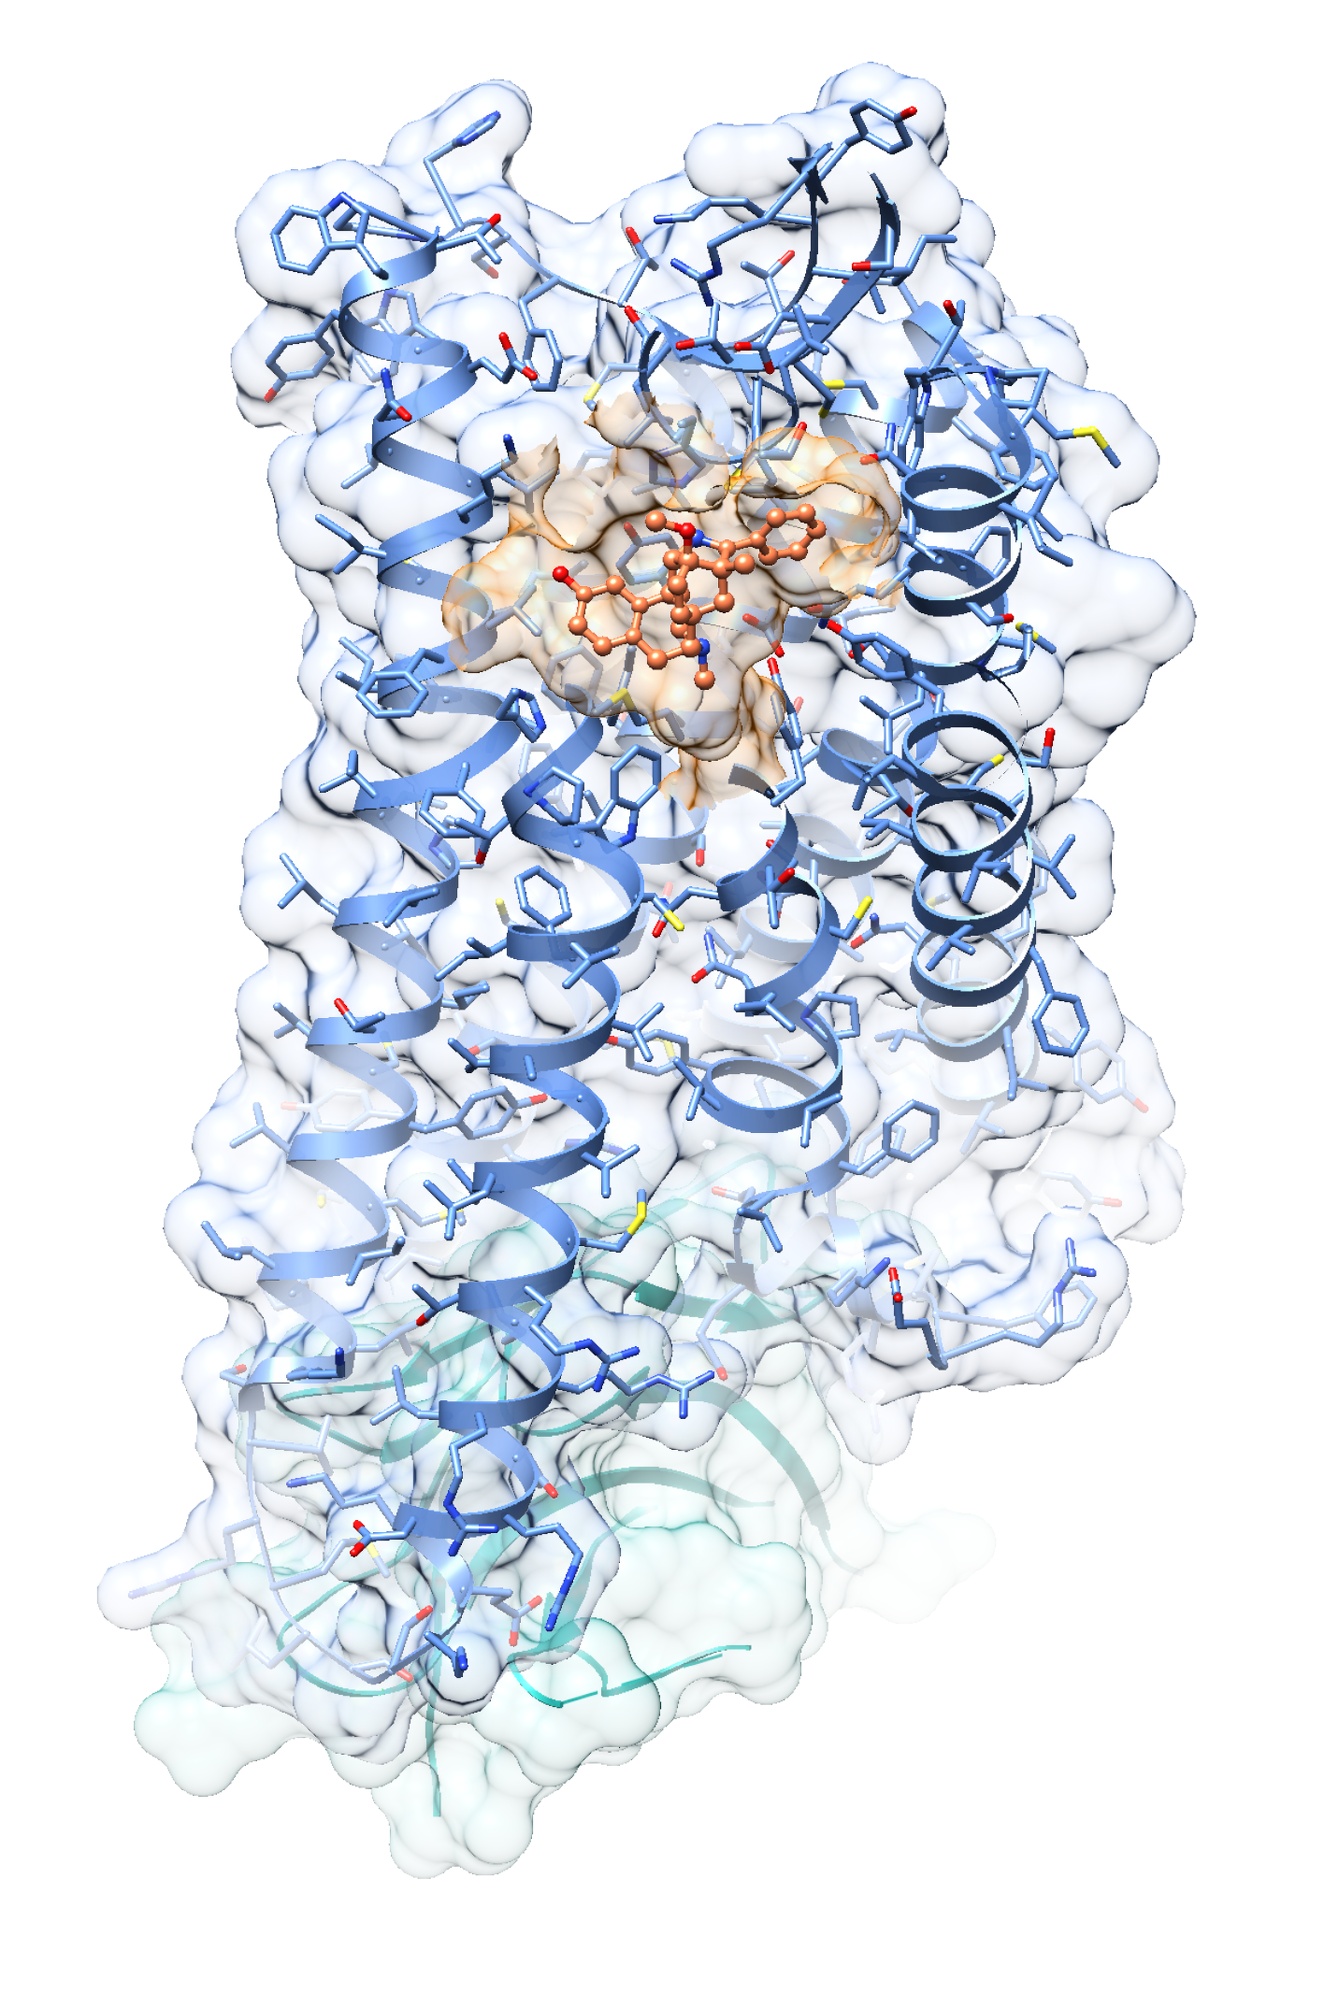 3D-Strukturen von Rezeptoren und Proteinen, die sie aktivieren, sollen Forschern helfen, maßgeschneiderte Medikamente herzustellen. Im Bild ist die Kristallstruktur des μ-Opioidrezeptor-Agonist- Komplexes im Aktivzustand zu sehen (orange: Agonist BU72; blau: μ-Opioidrezeptor; türkis: G-Protein imitierender Nanobody). Die genaue Struktur hat ein Team mit Beteiligung der FAU jetzt entschlüsselt. (Grafik: Ralf Kling, FAU)